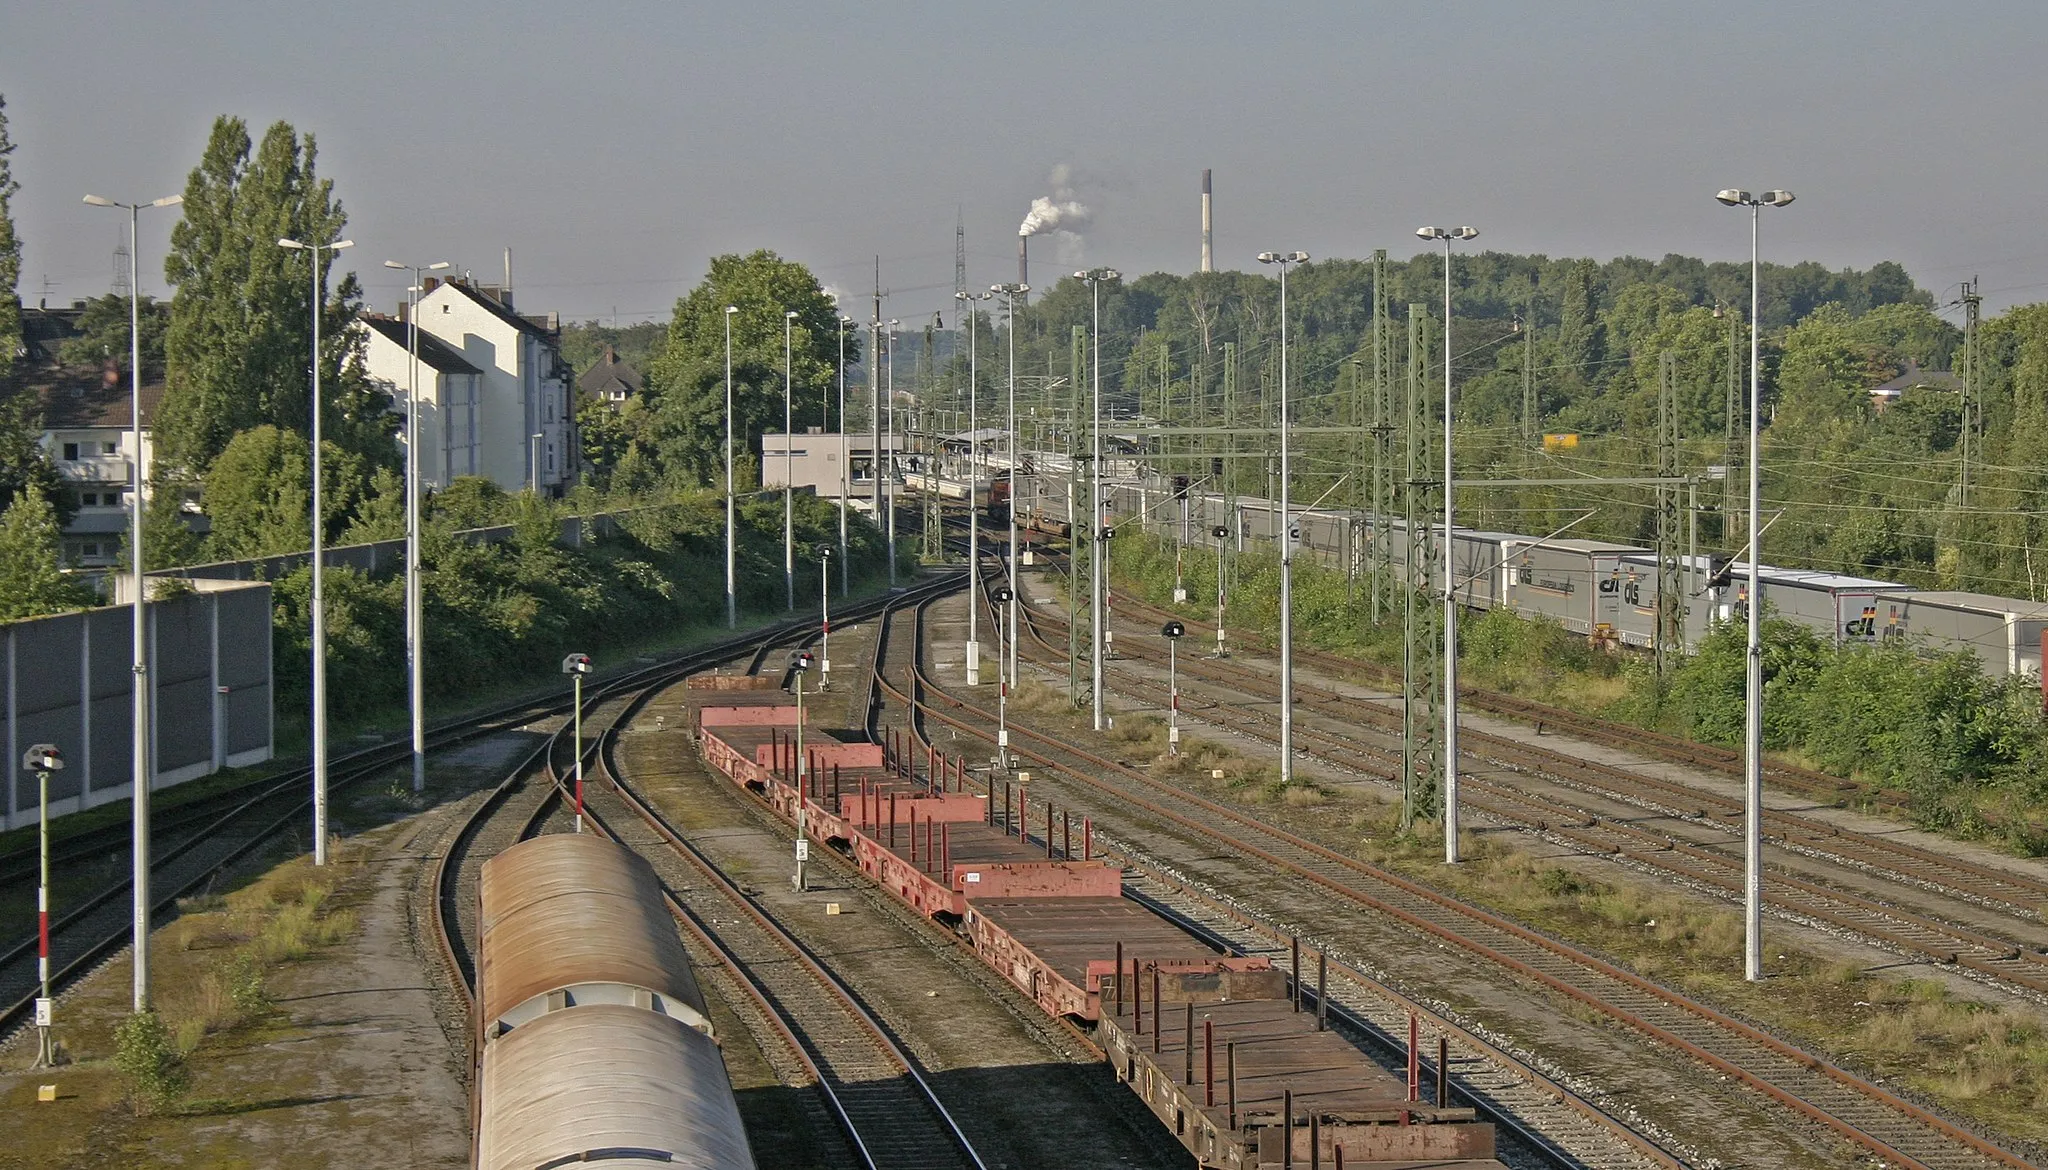 Photo showing: Bf Rheinhausen: Blick von der Friedrich-Ebert-Straße auf den Güterbahnhof und die Anlagen des Personenbahnhofs im Hintergrund. Mittig im Bild steht das Stellwerk Rf.